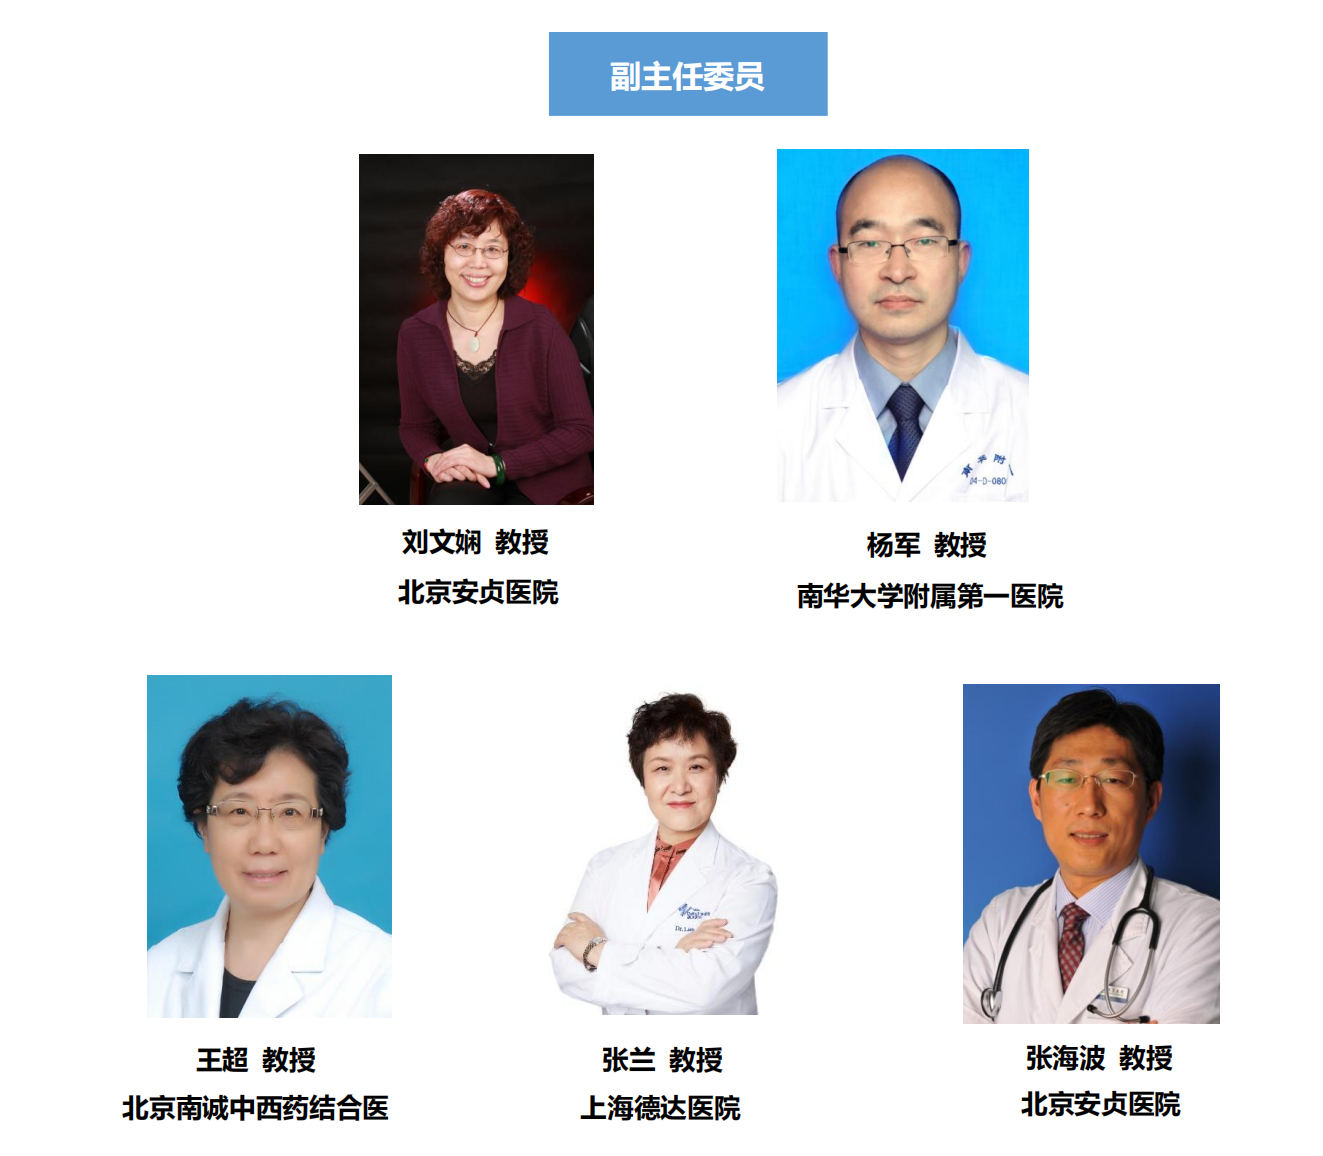 中国老年保健协会心血管疾病预防与康复专业委员会架构(1)_01.png